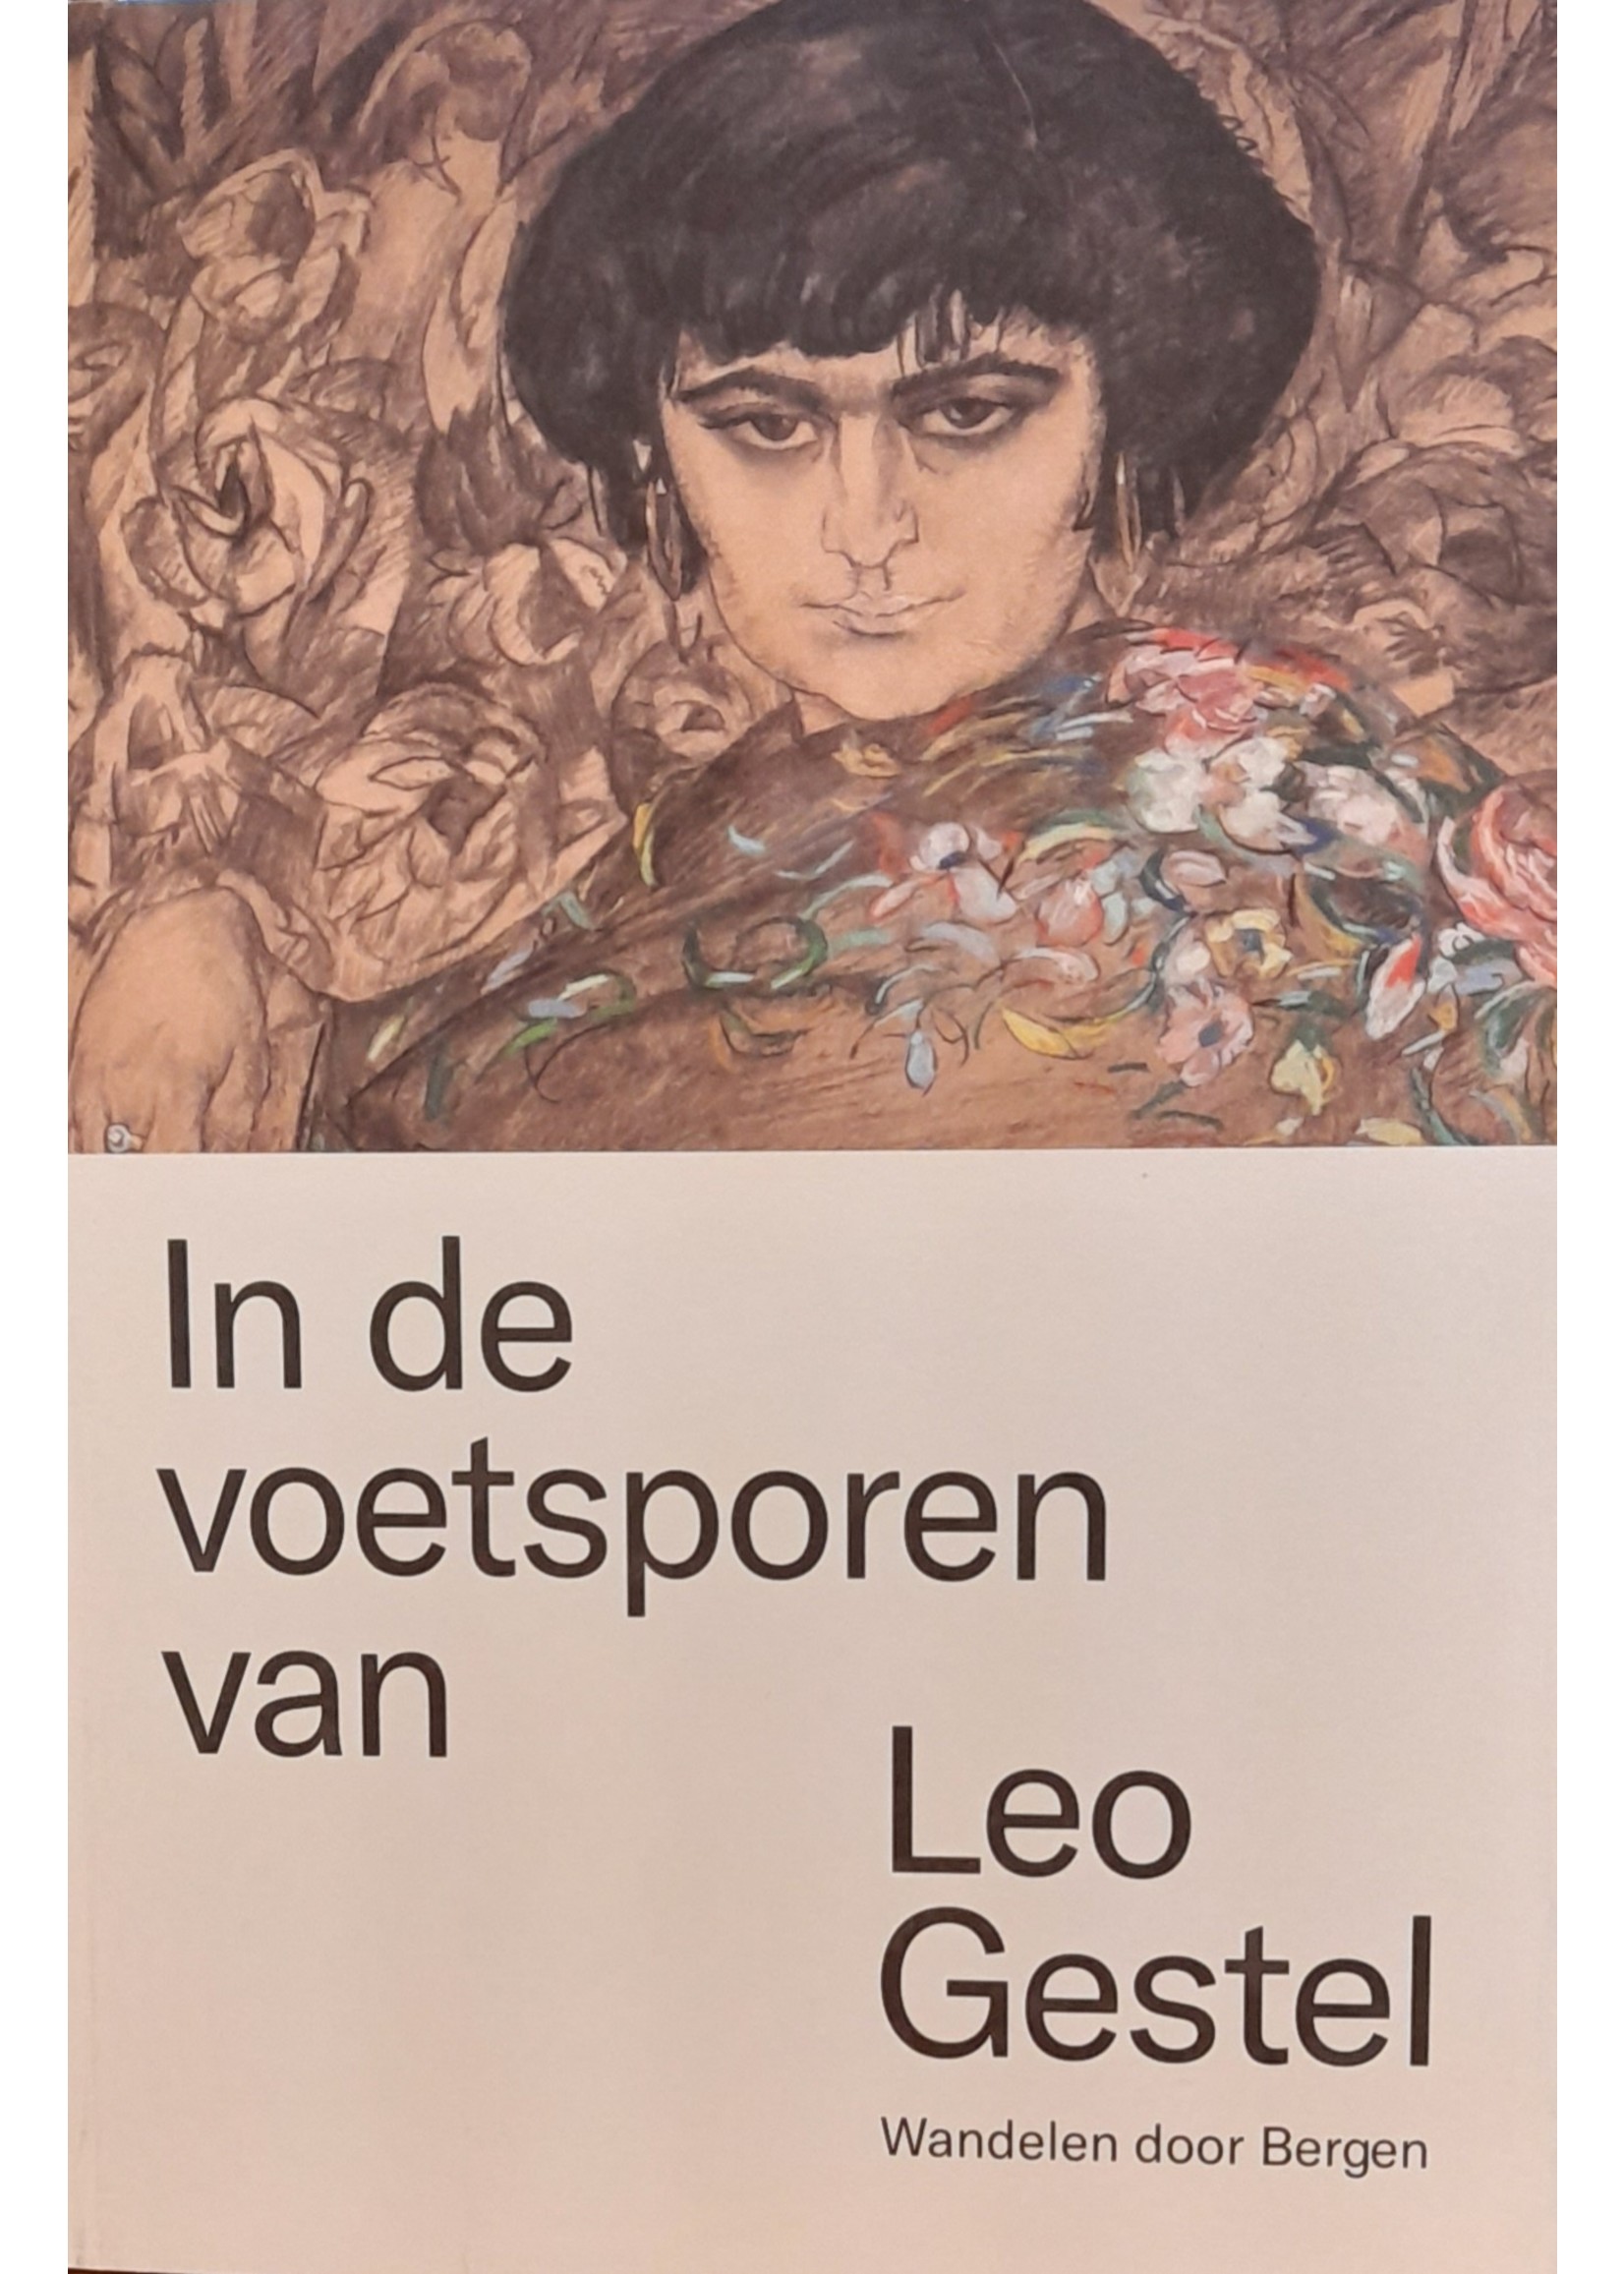 Boekje "In de voetsporen van Leo Gestel"